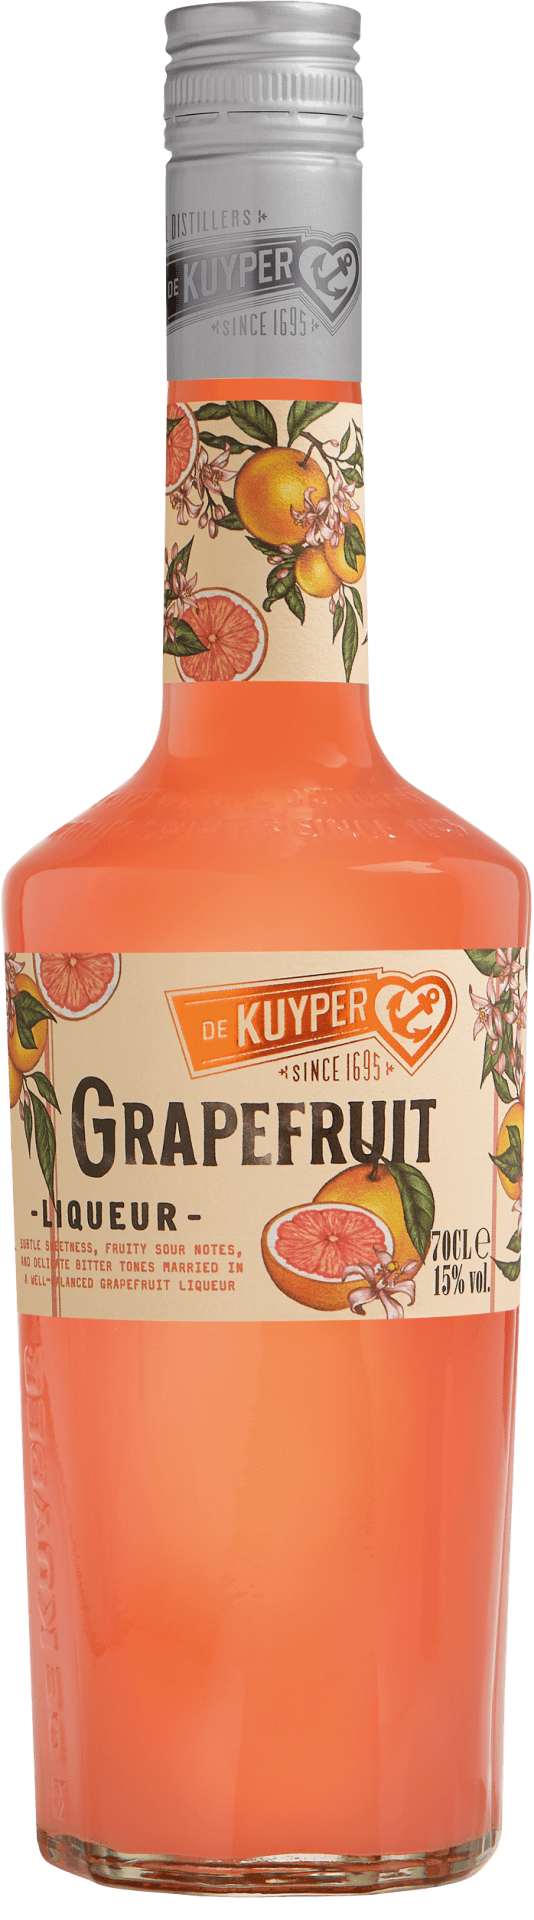 De Kuyper Grapefruit Liqueur - 0.7 l